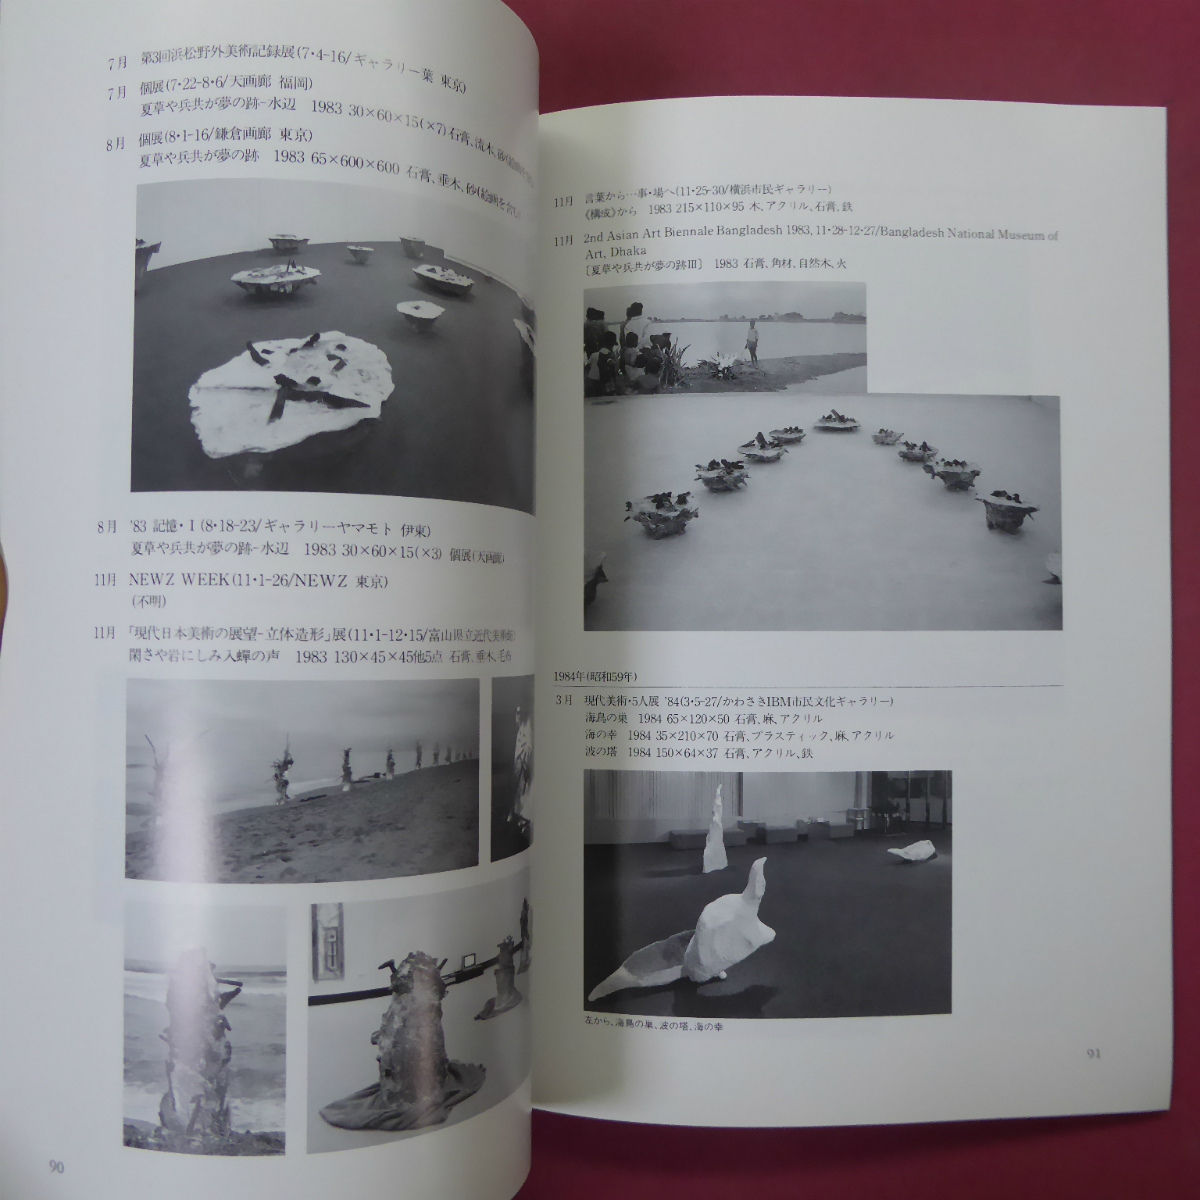 w6 альбом с иллюстрациями [ дверь .. самец выставка -. линия. лес /1995 год * Hiroshima город настоящее время картинная галерея ]... Akira : история как. скульптура. . такой как делать создание делать ./...:. линия .. смысл 